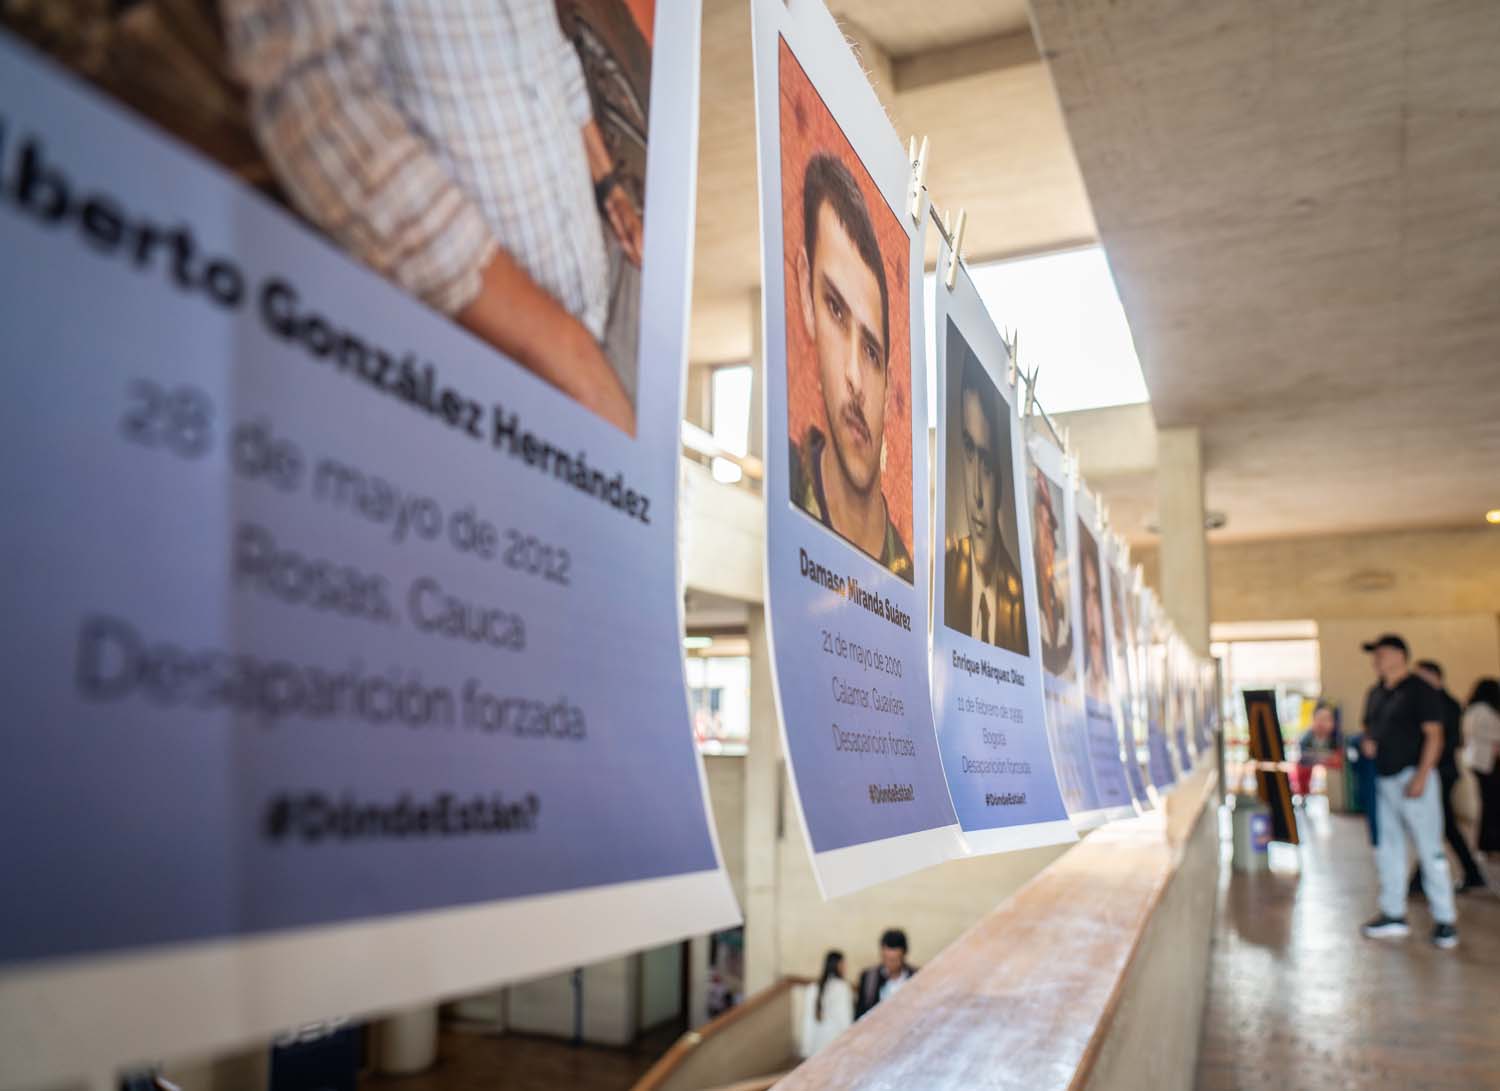 Des hommages photographiques aux victimes disparues sont disposés à l'extérieur d'une bibliothèque à Bogotá.